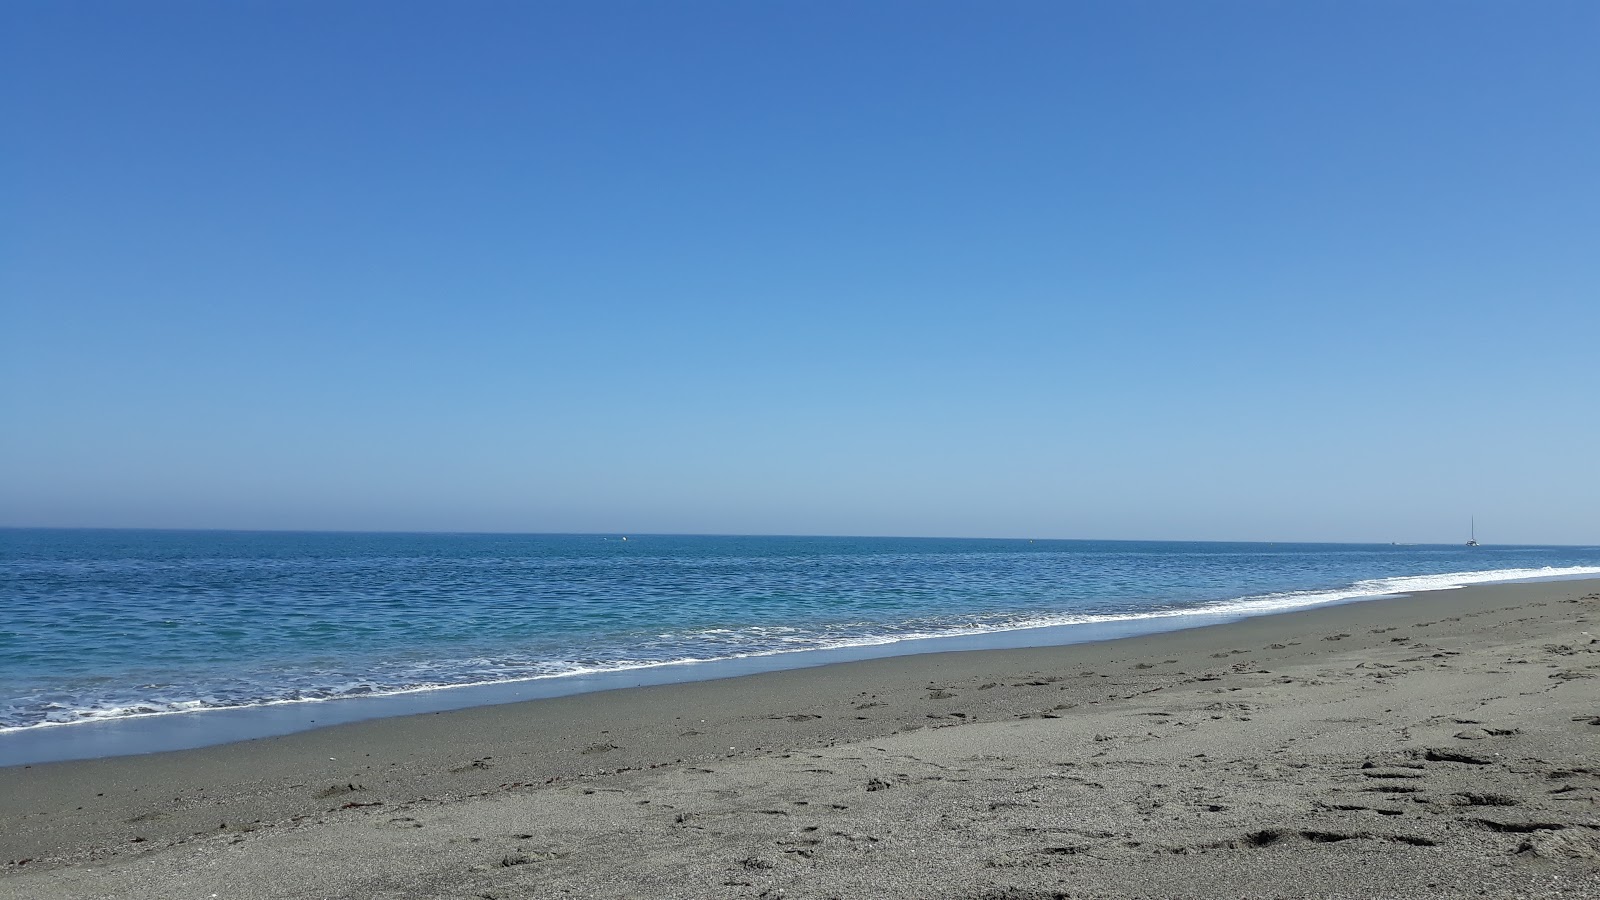 Playa los Toros'in fotoğrafı gri kum yüzey ile